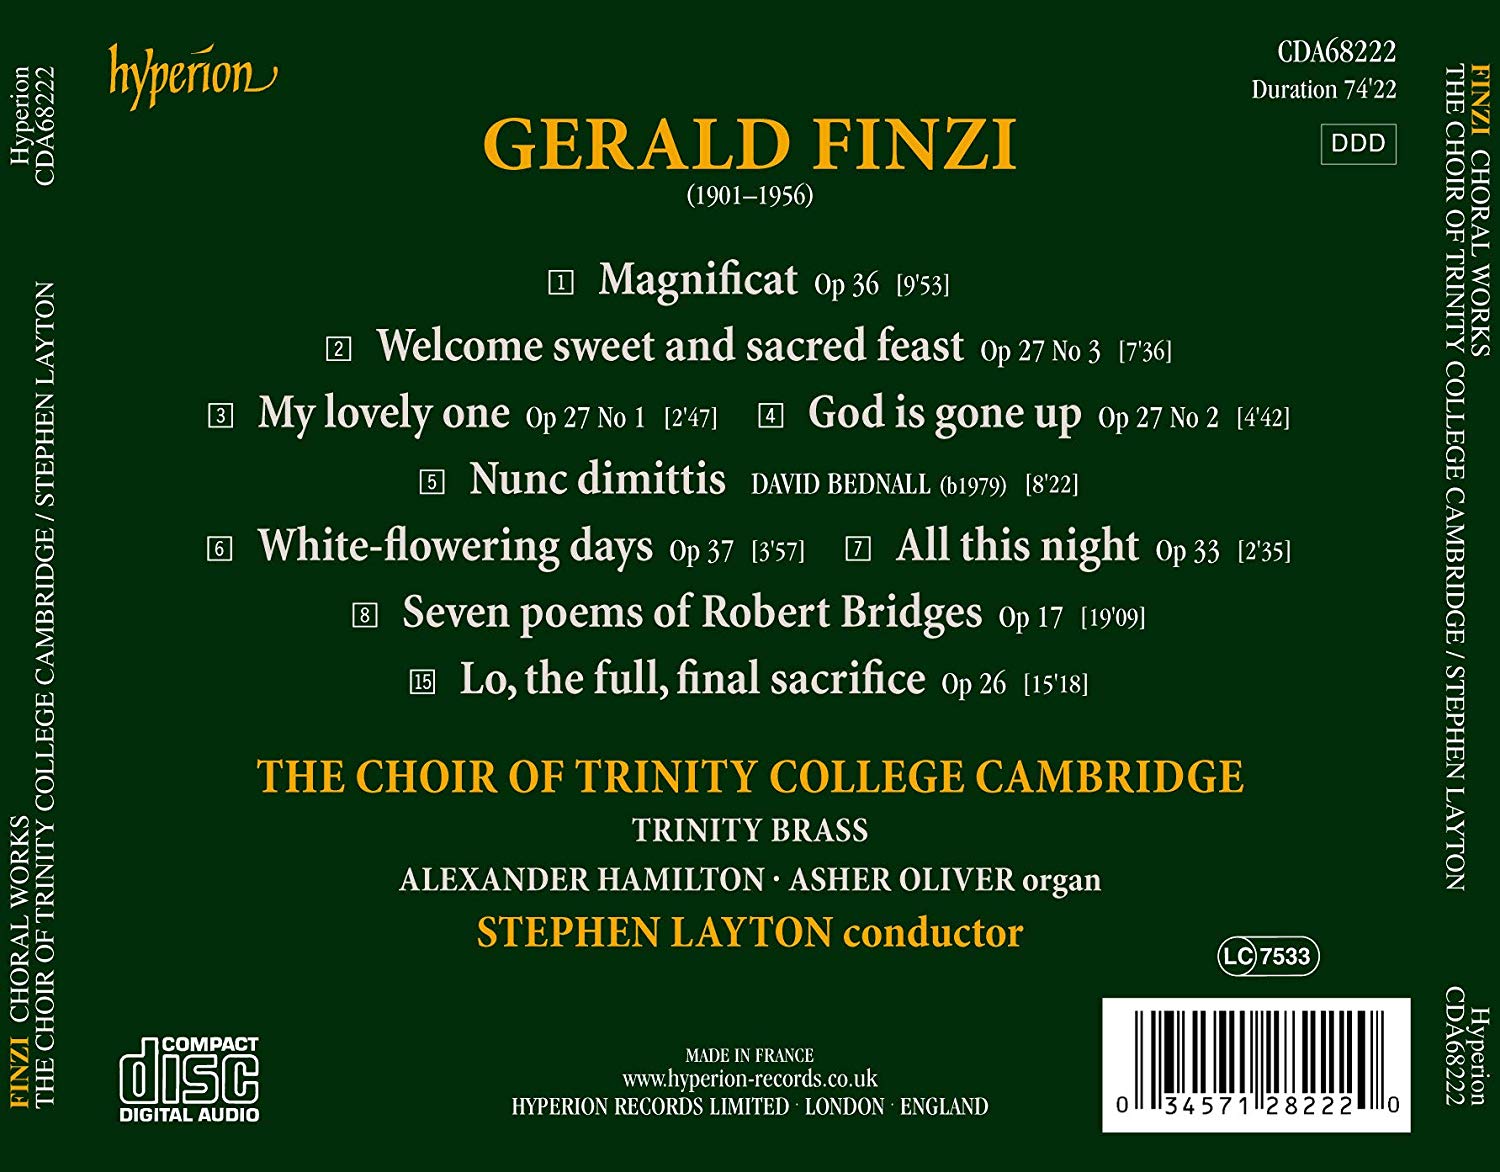 Trinity College Choir 제랄드 핀지: 합창곡 모음집 (Gerald Finzi: Choral works)